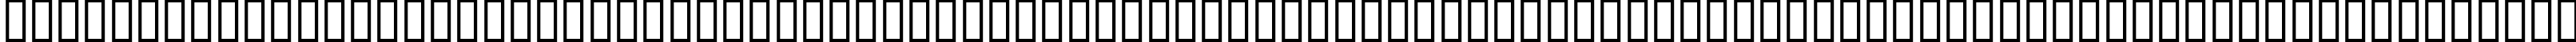 Пример написания шрифтом EuroRoman Oblique текста на испанском